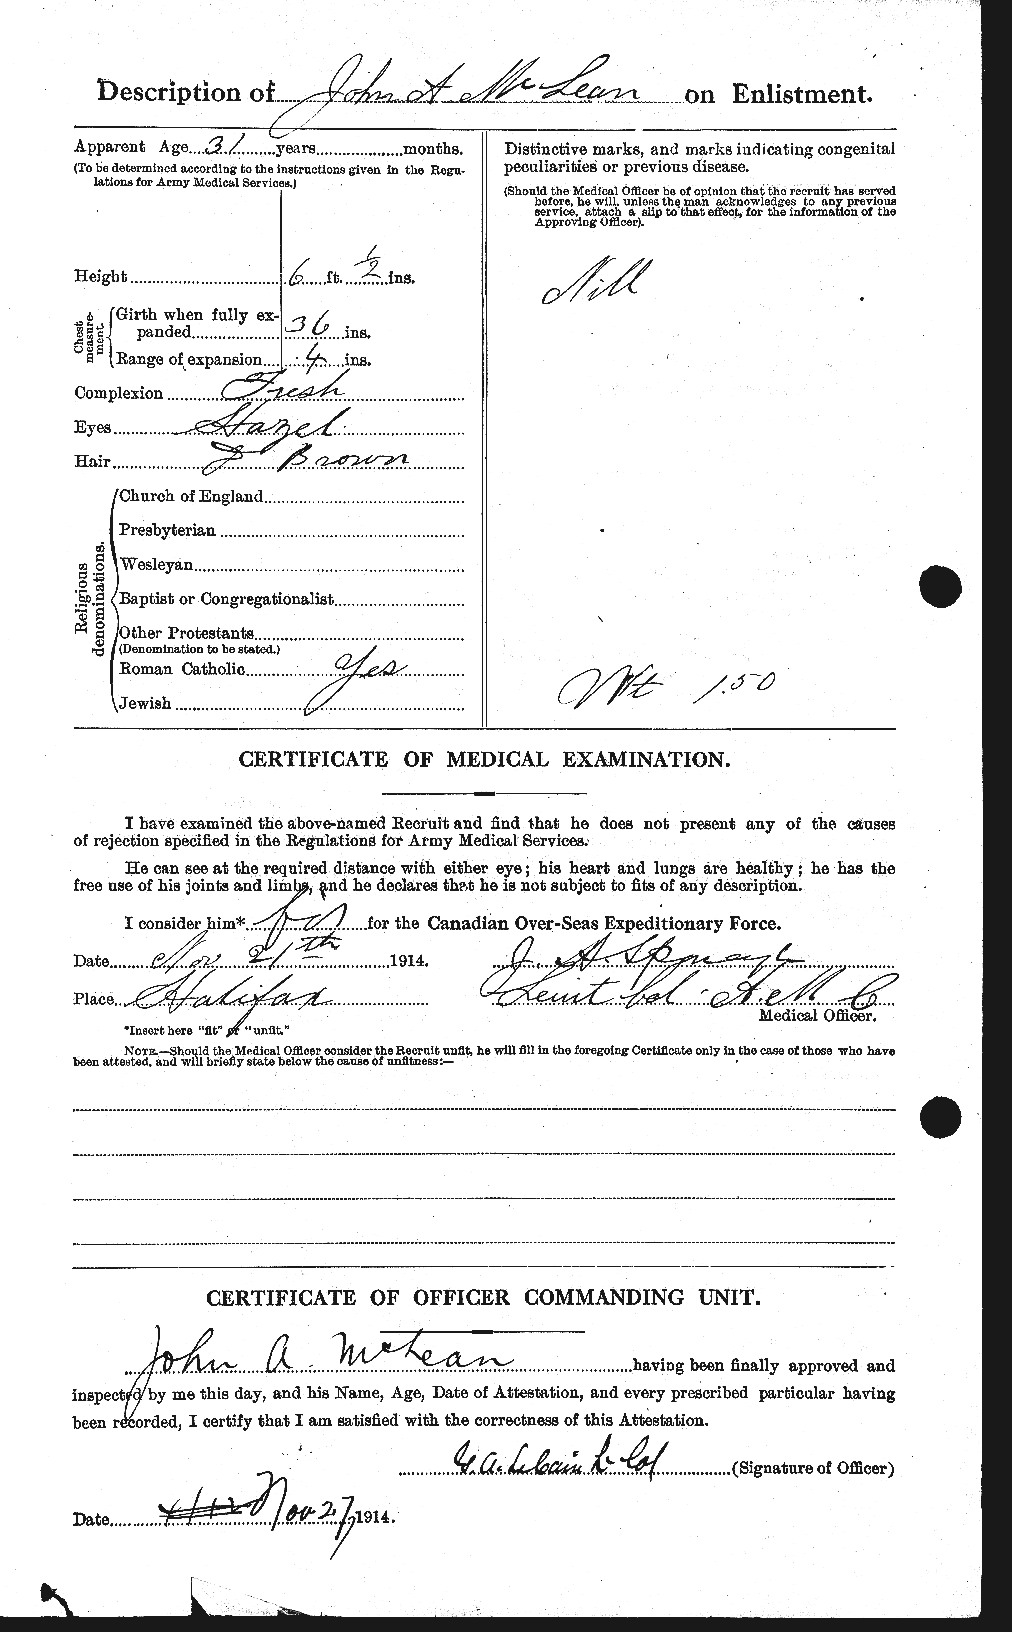 Dossiers du Personnel de la Première Guerre mondiale - CEC 531771b